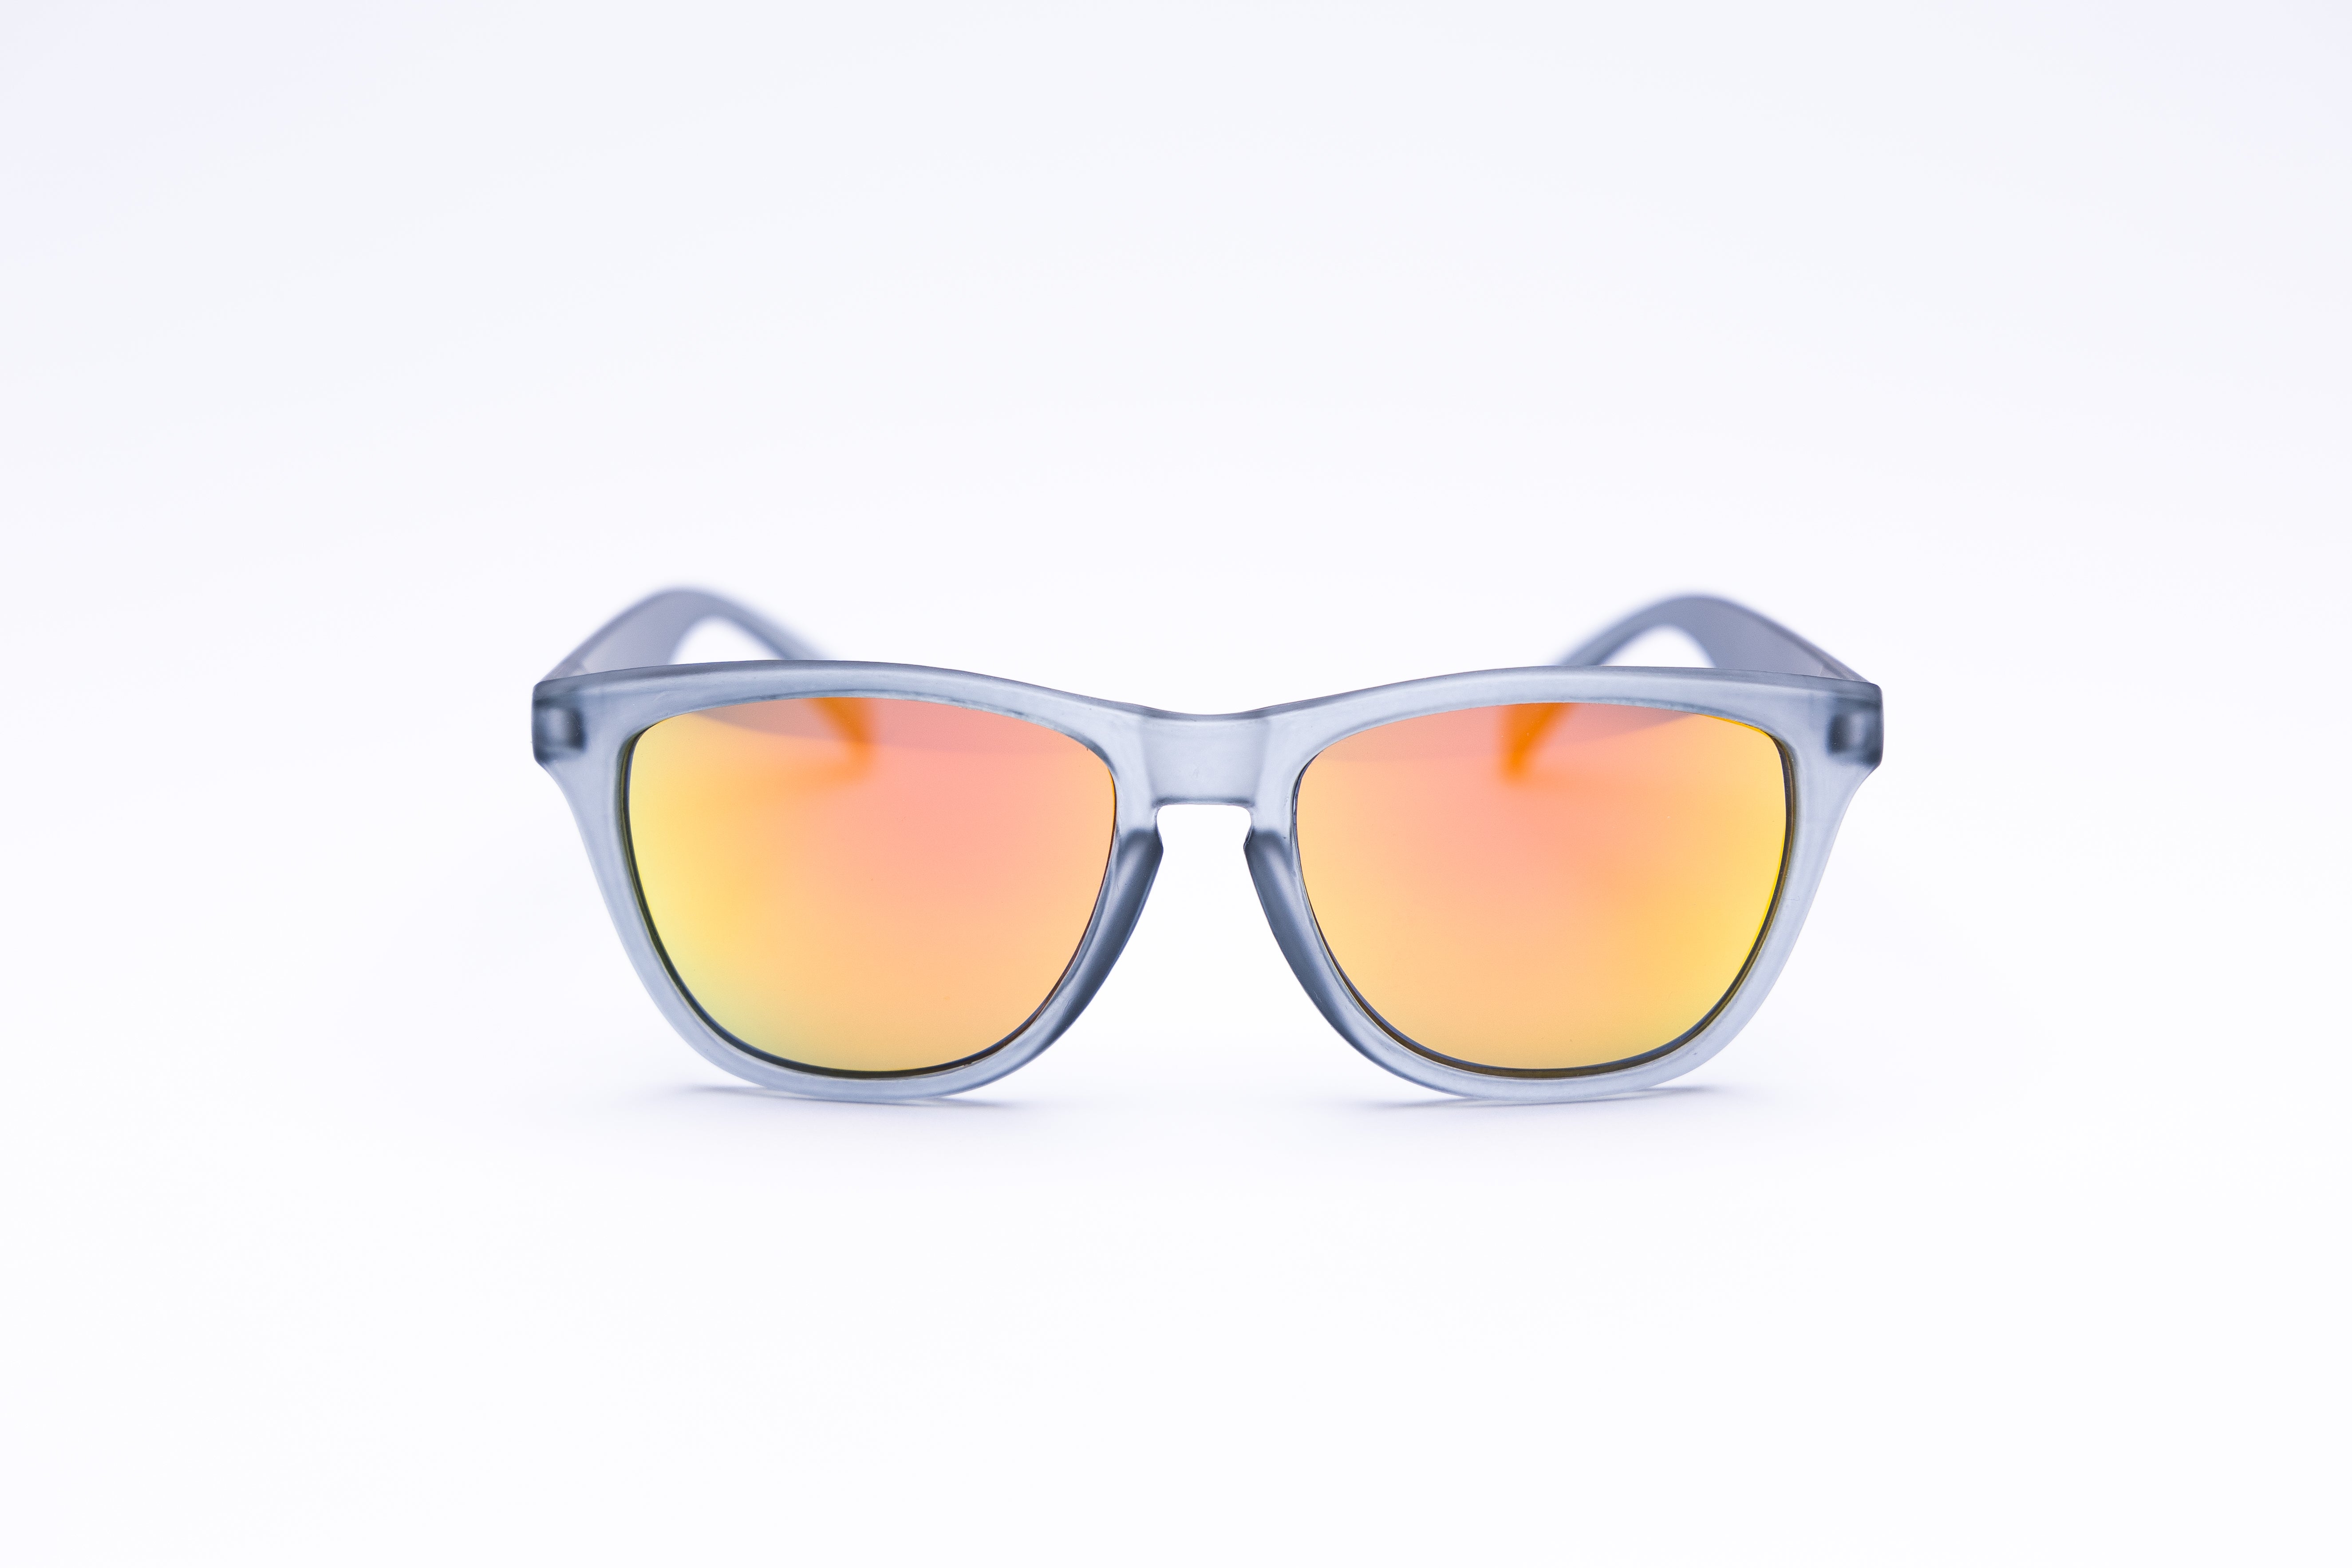 Sunset Lens Sunglasses  Sunset Lens Sunglasses For Men & Women